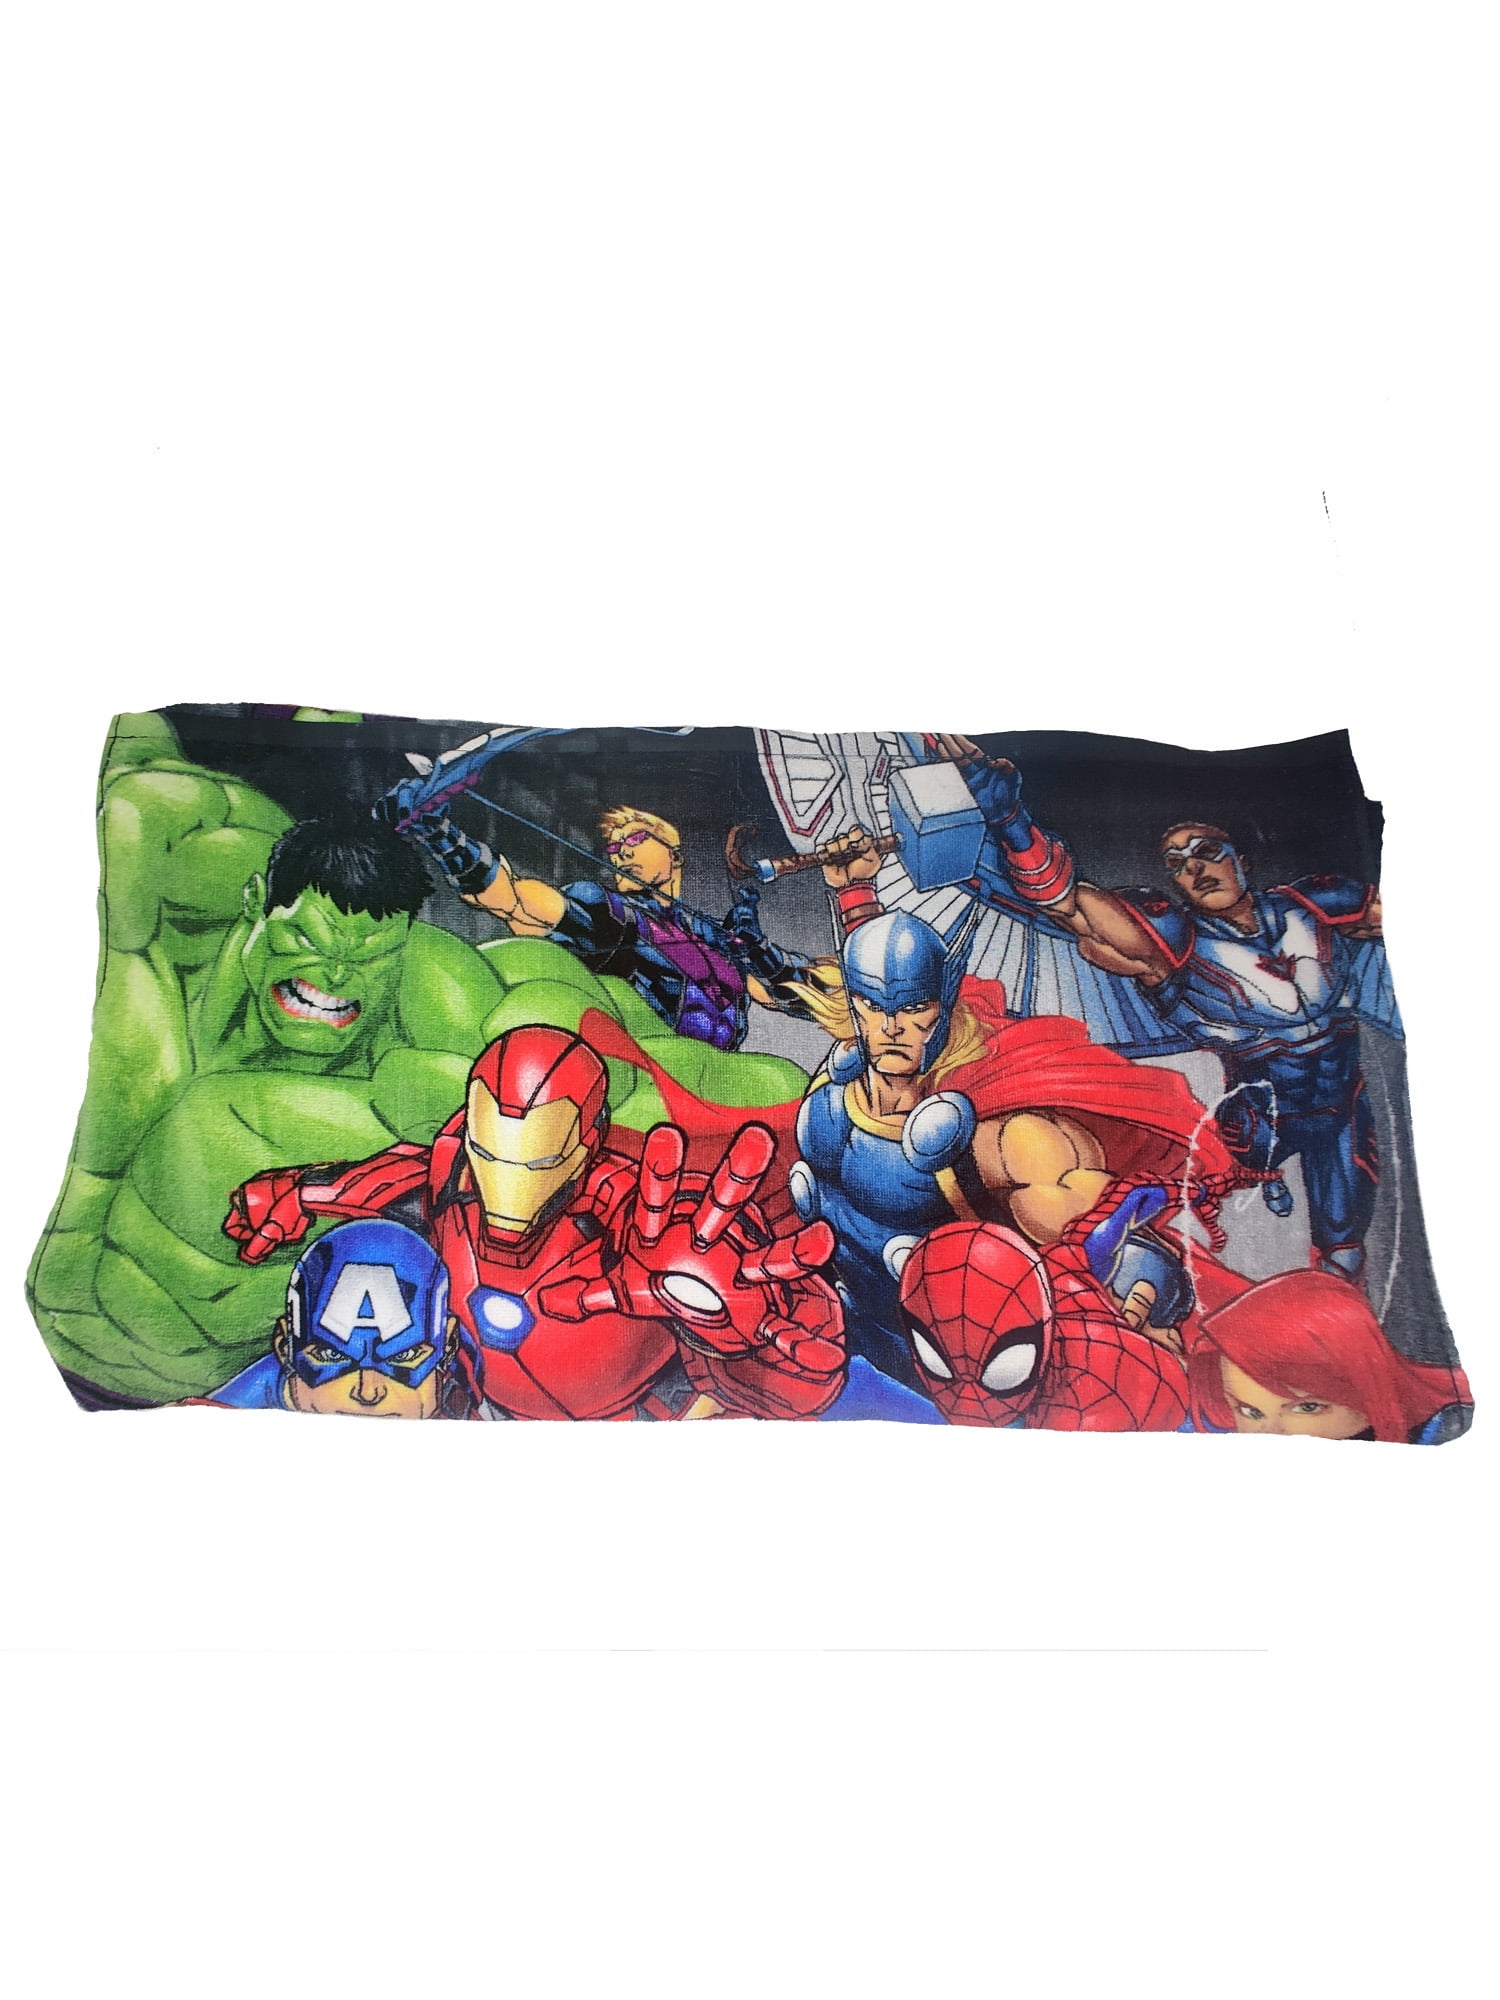 Towel Bath Beach Pool Cotton 28"x58" Avengers Iron Man Hulk Captain A Age 3 N 